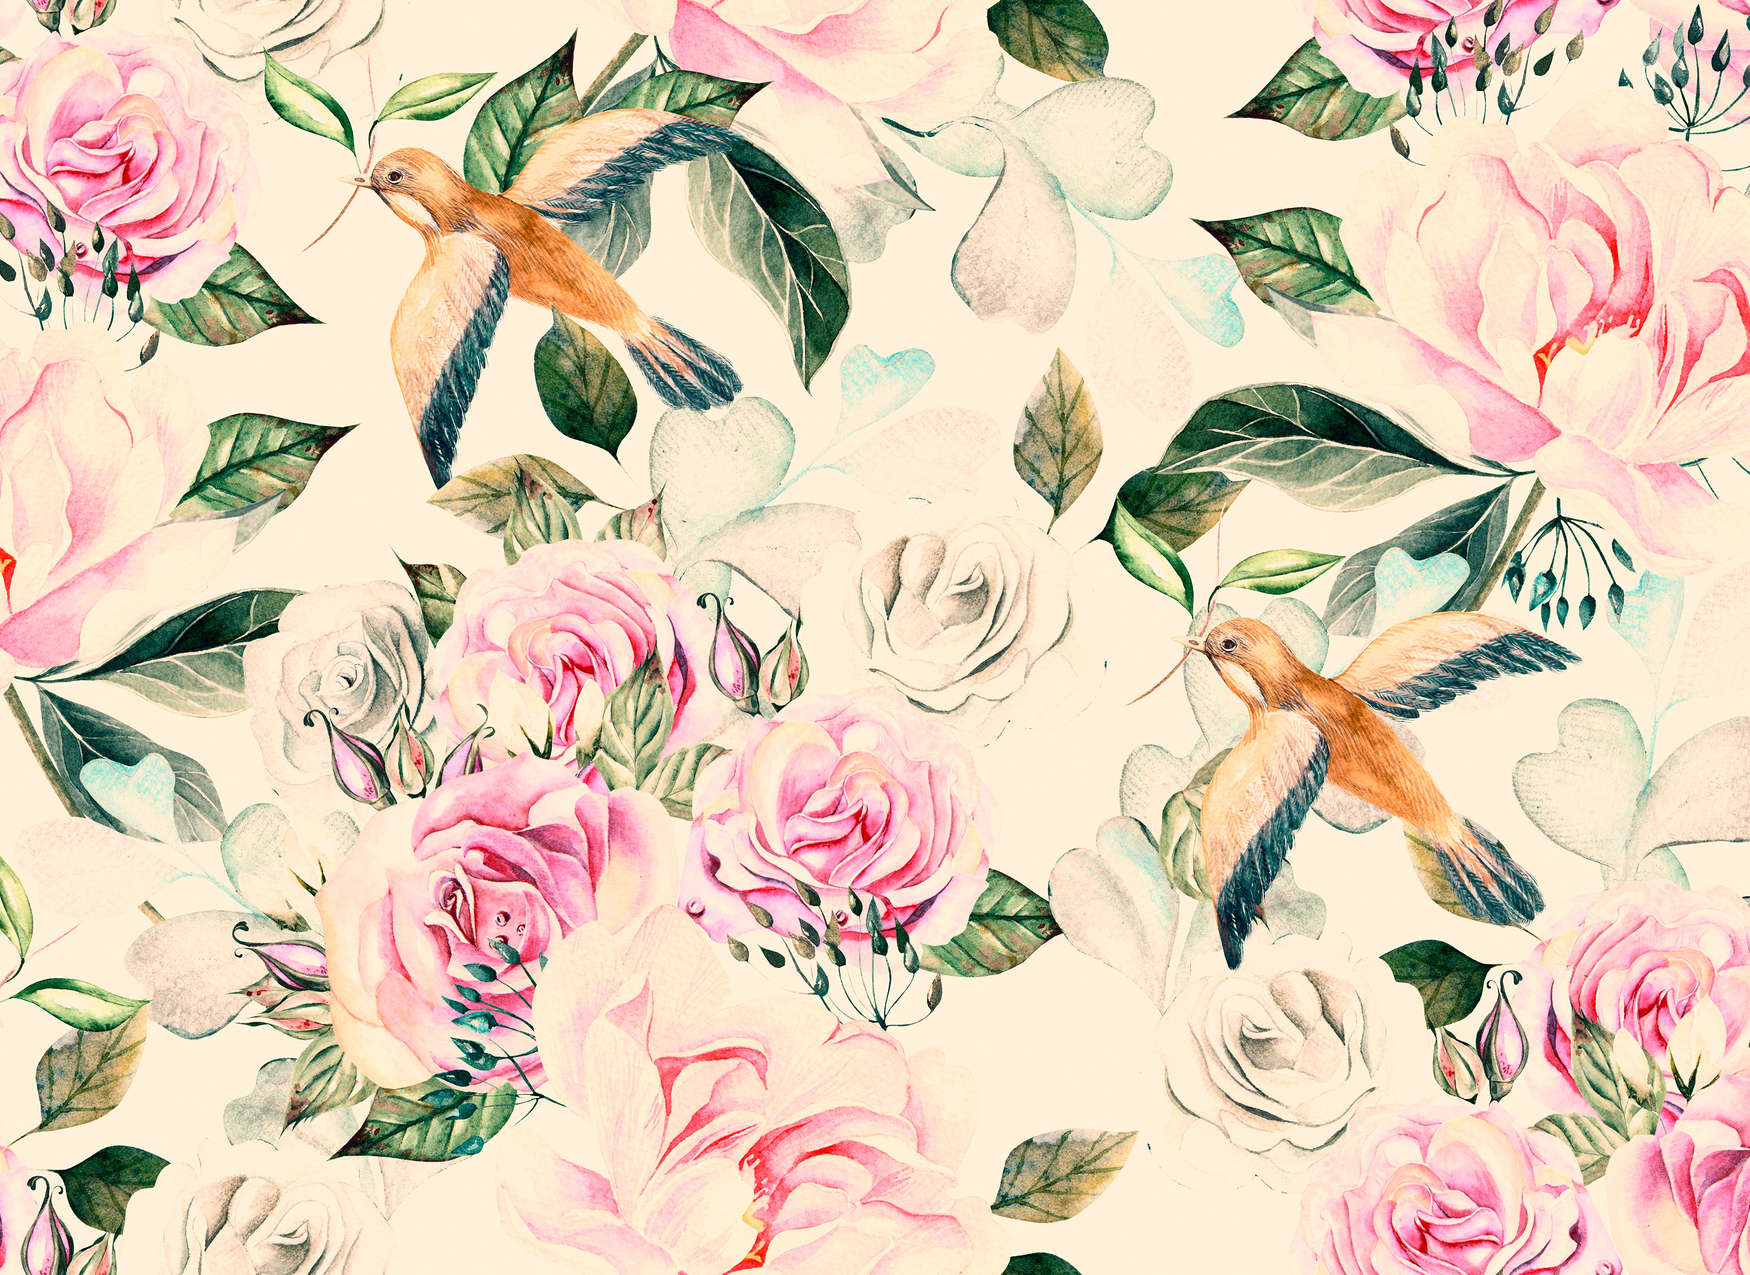             Fleurs et oiseaux ludiques de style vintage - crème, rose, vert
        